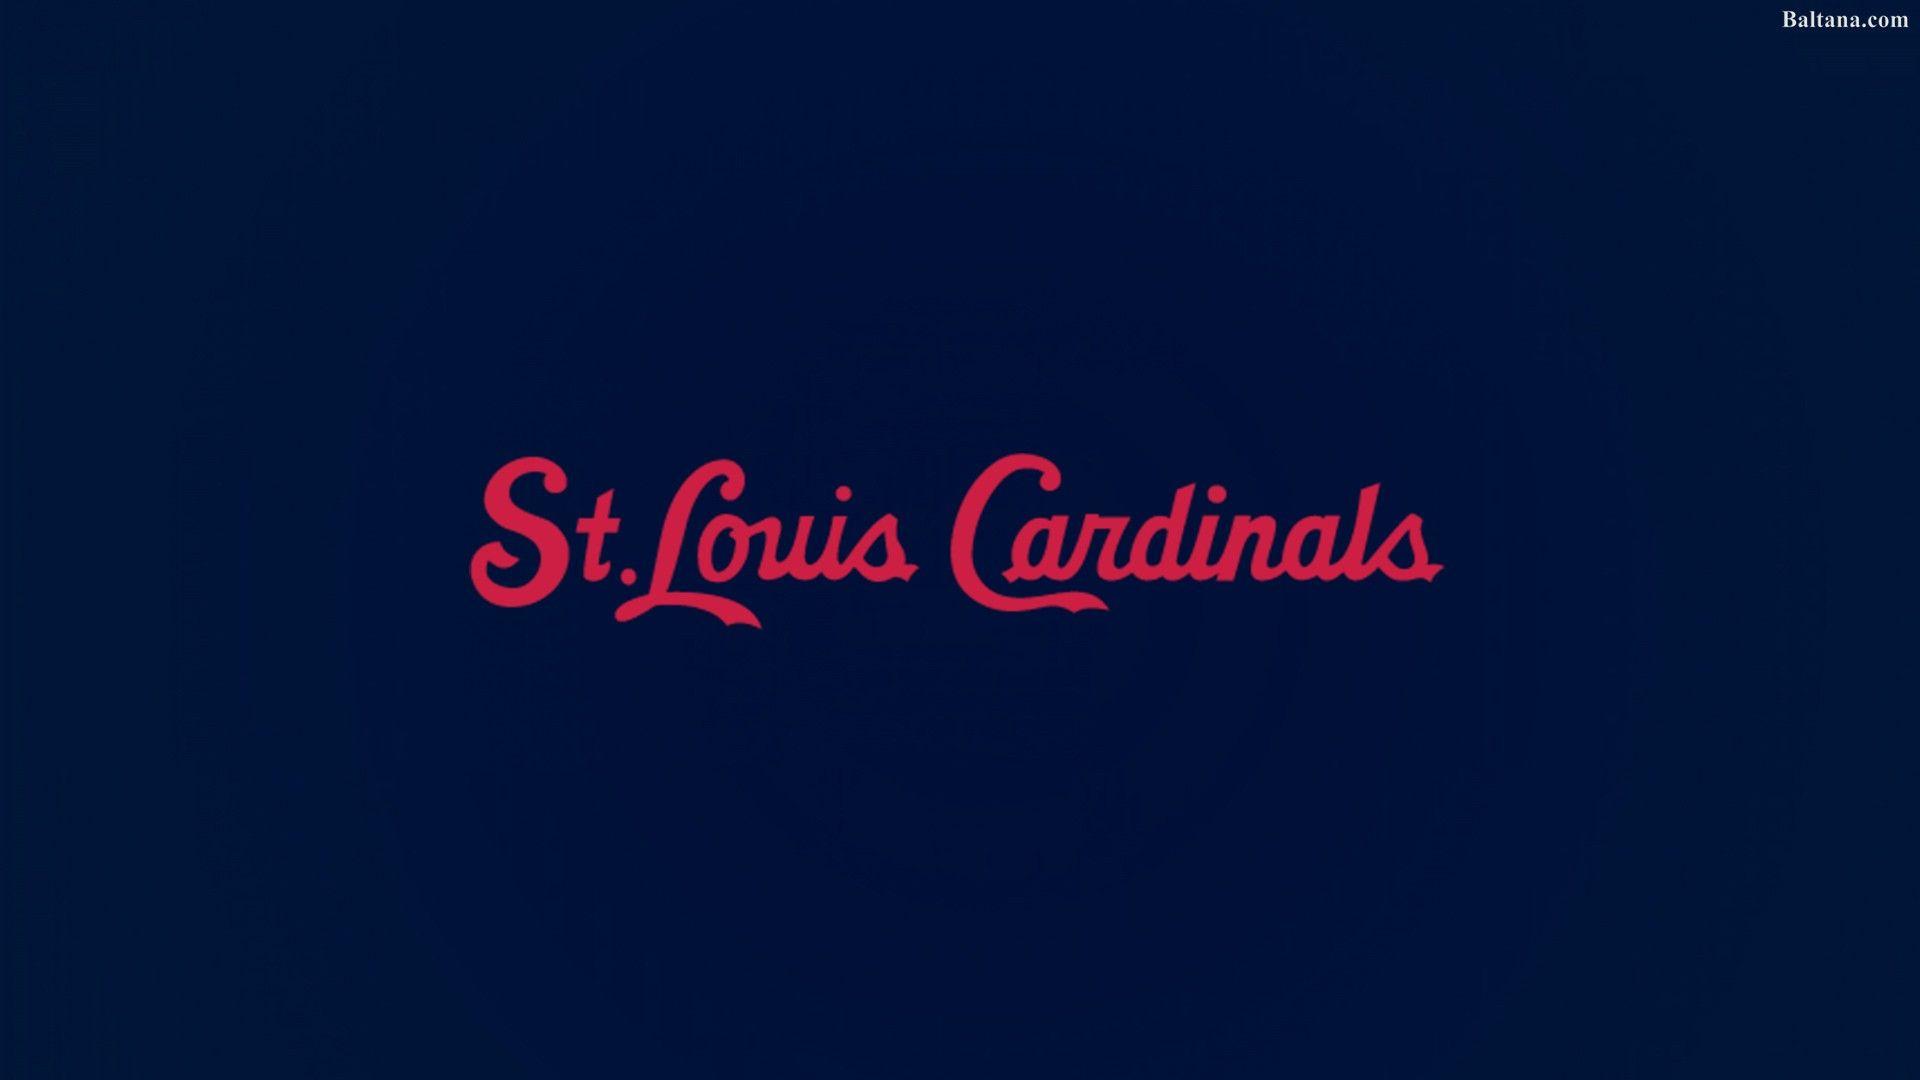 St Louis Cardinals Desktop Wallpaper 33334